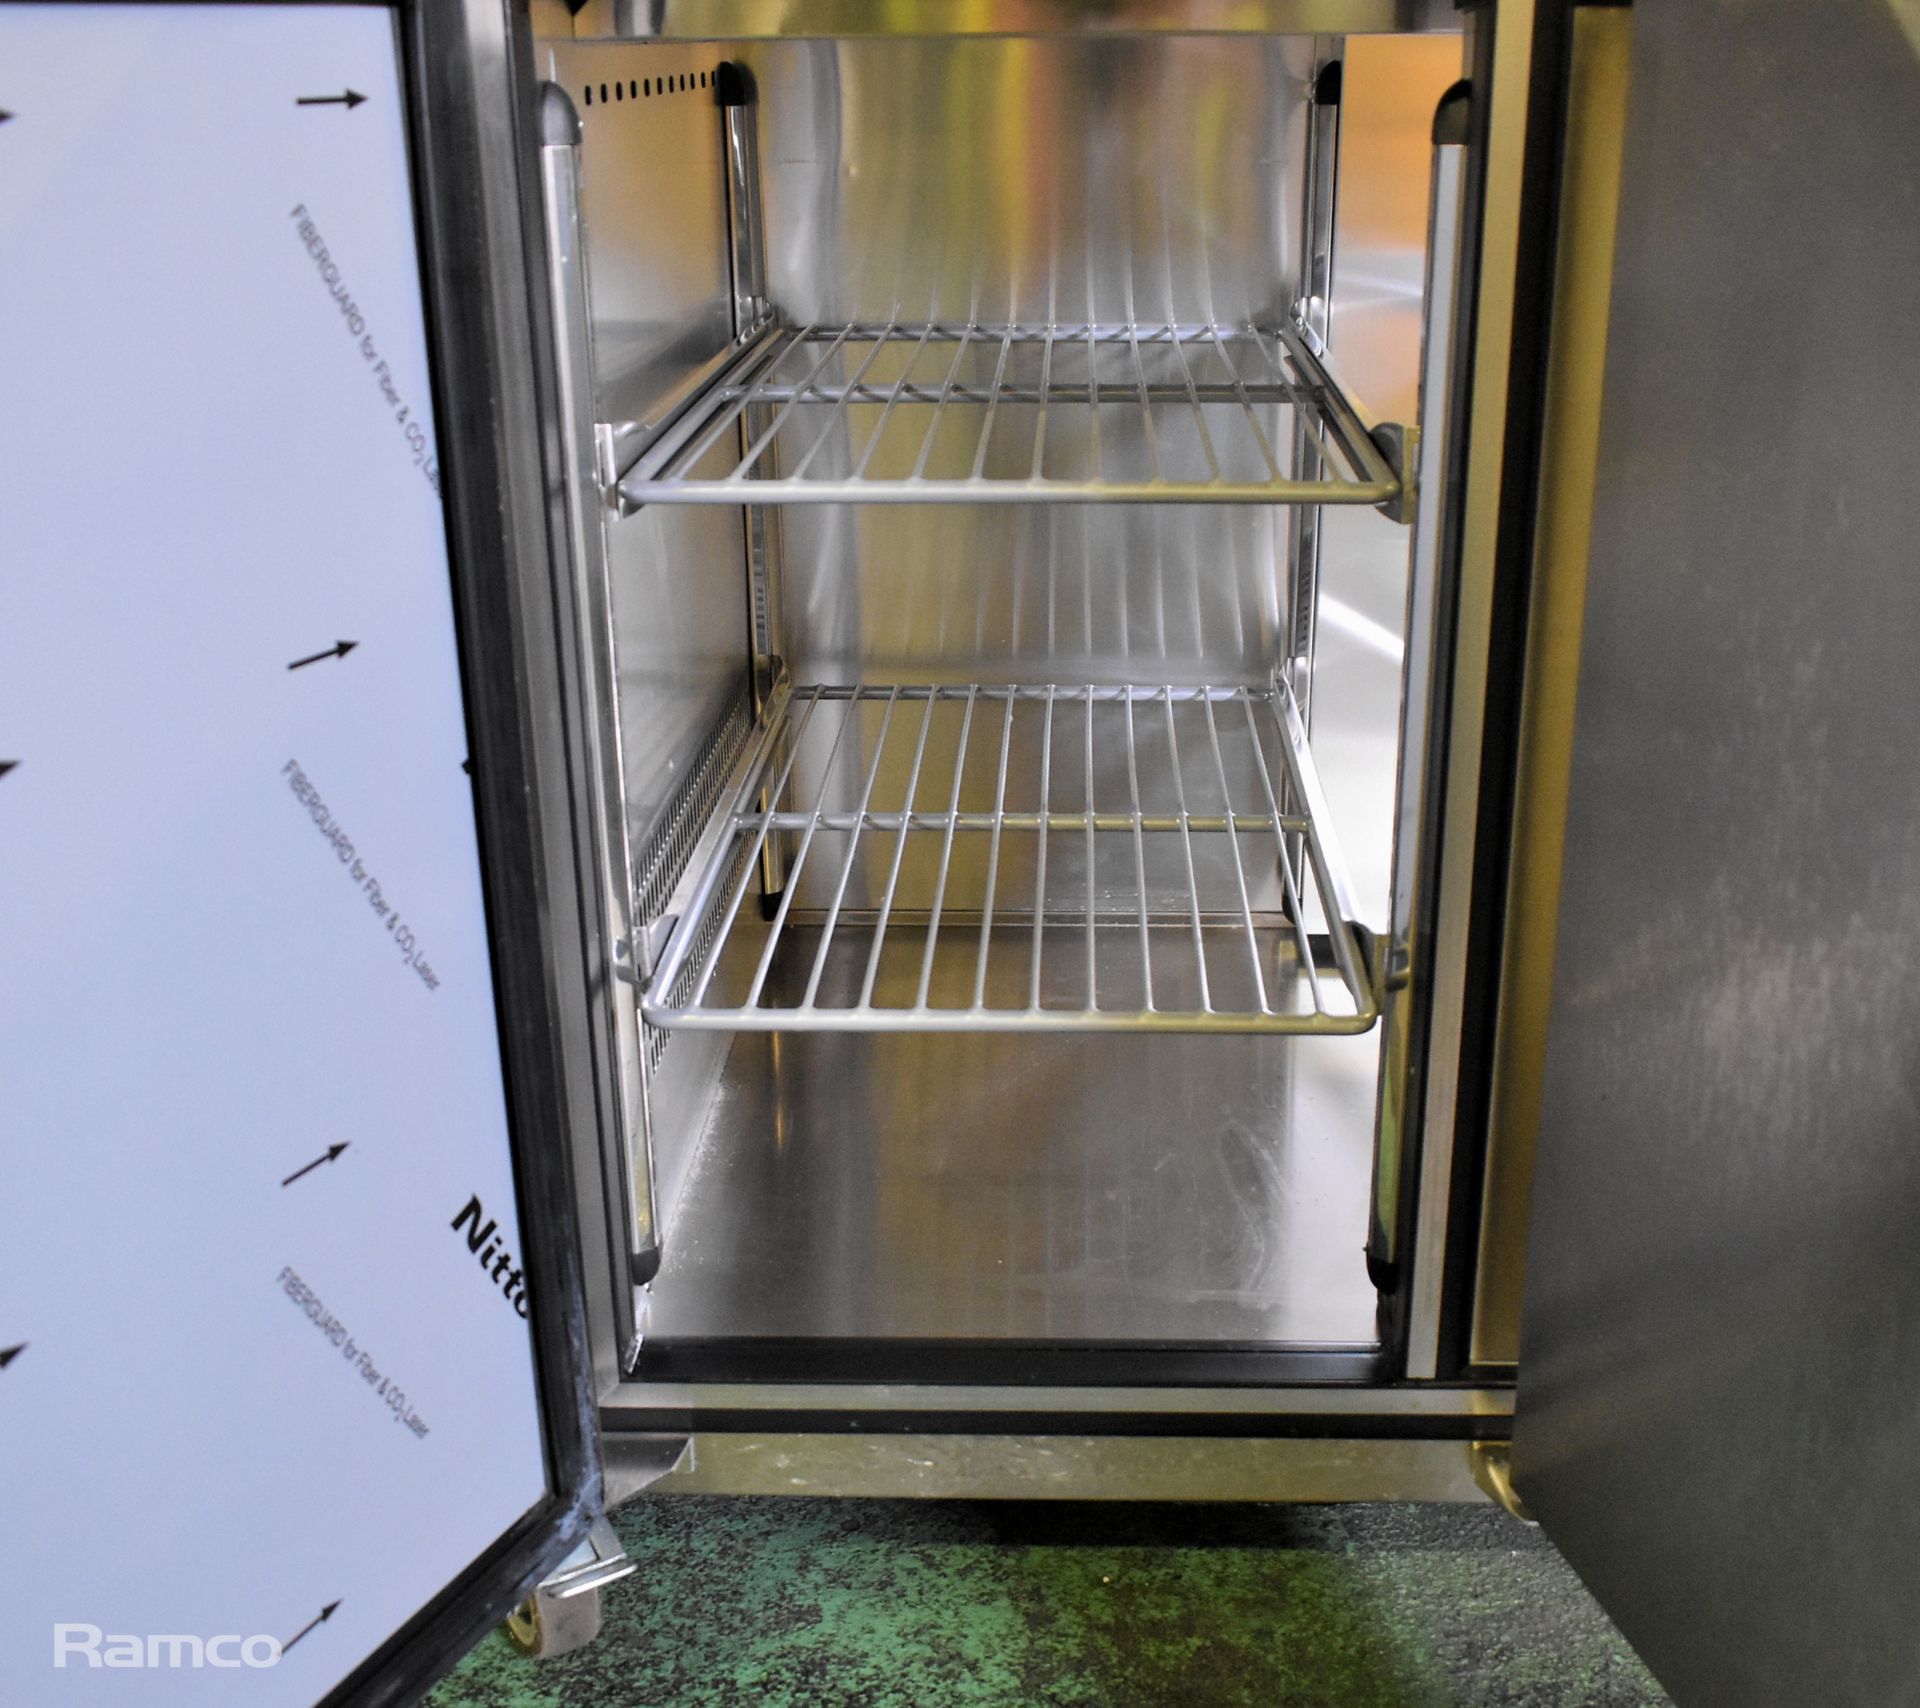 Foster Eco Pro G3 43-258 EP1/4 4 door counter fridge - Image 3 of 8